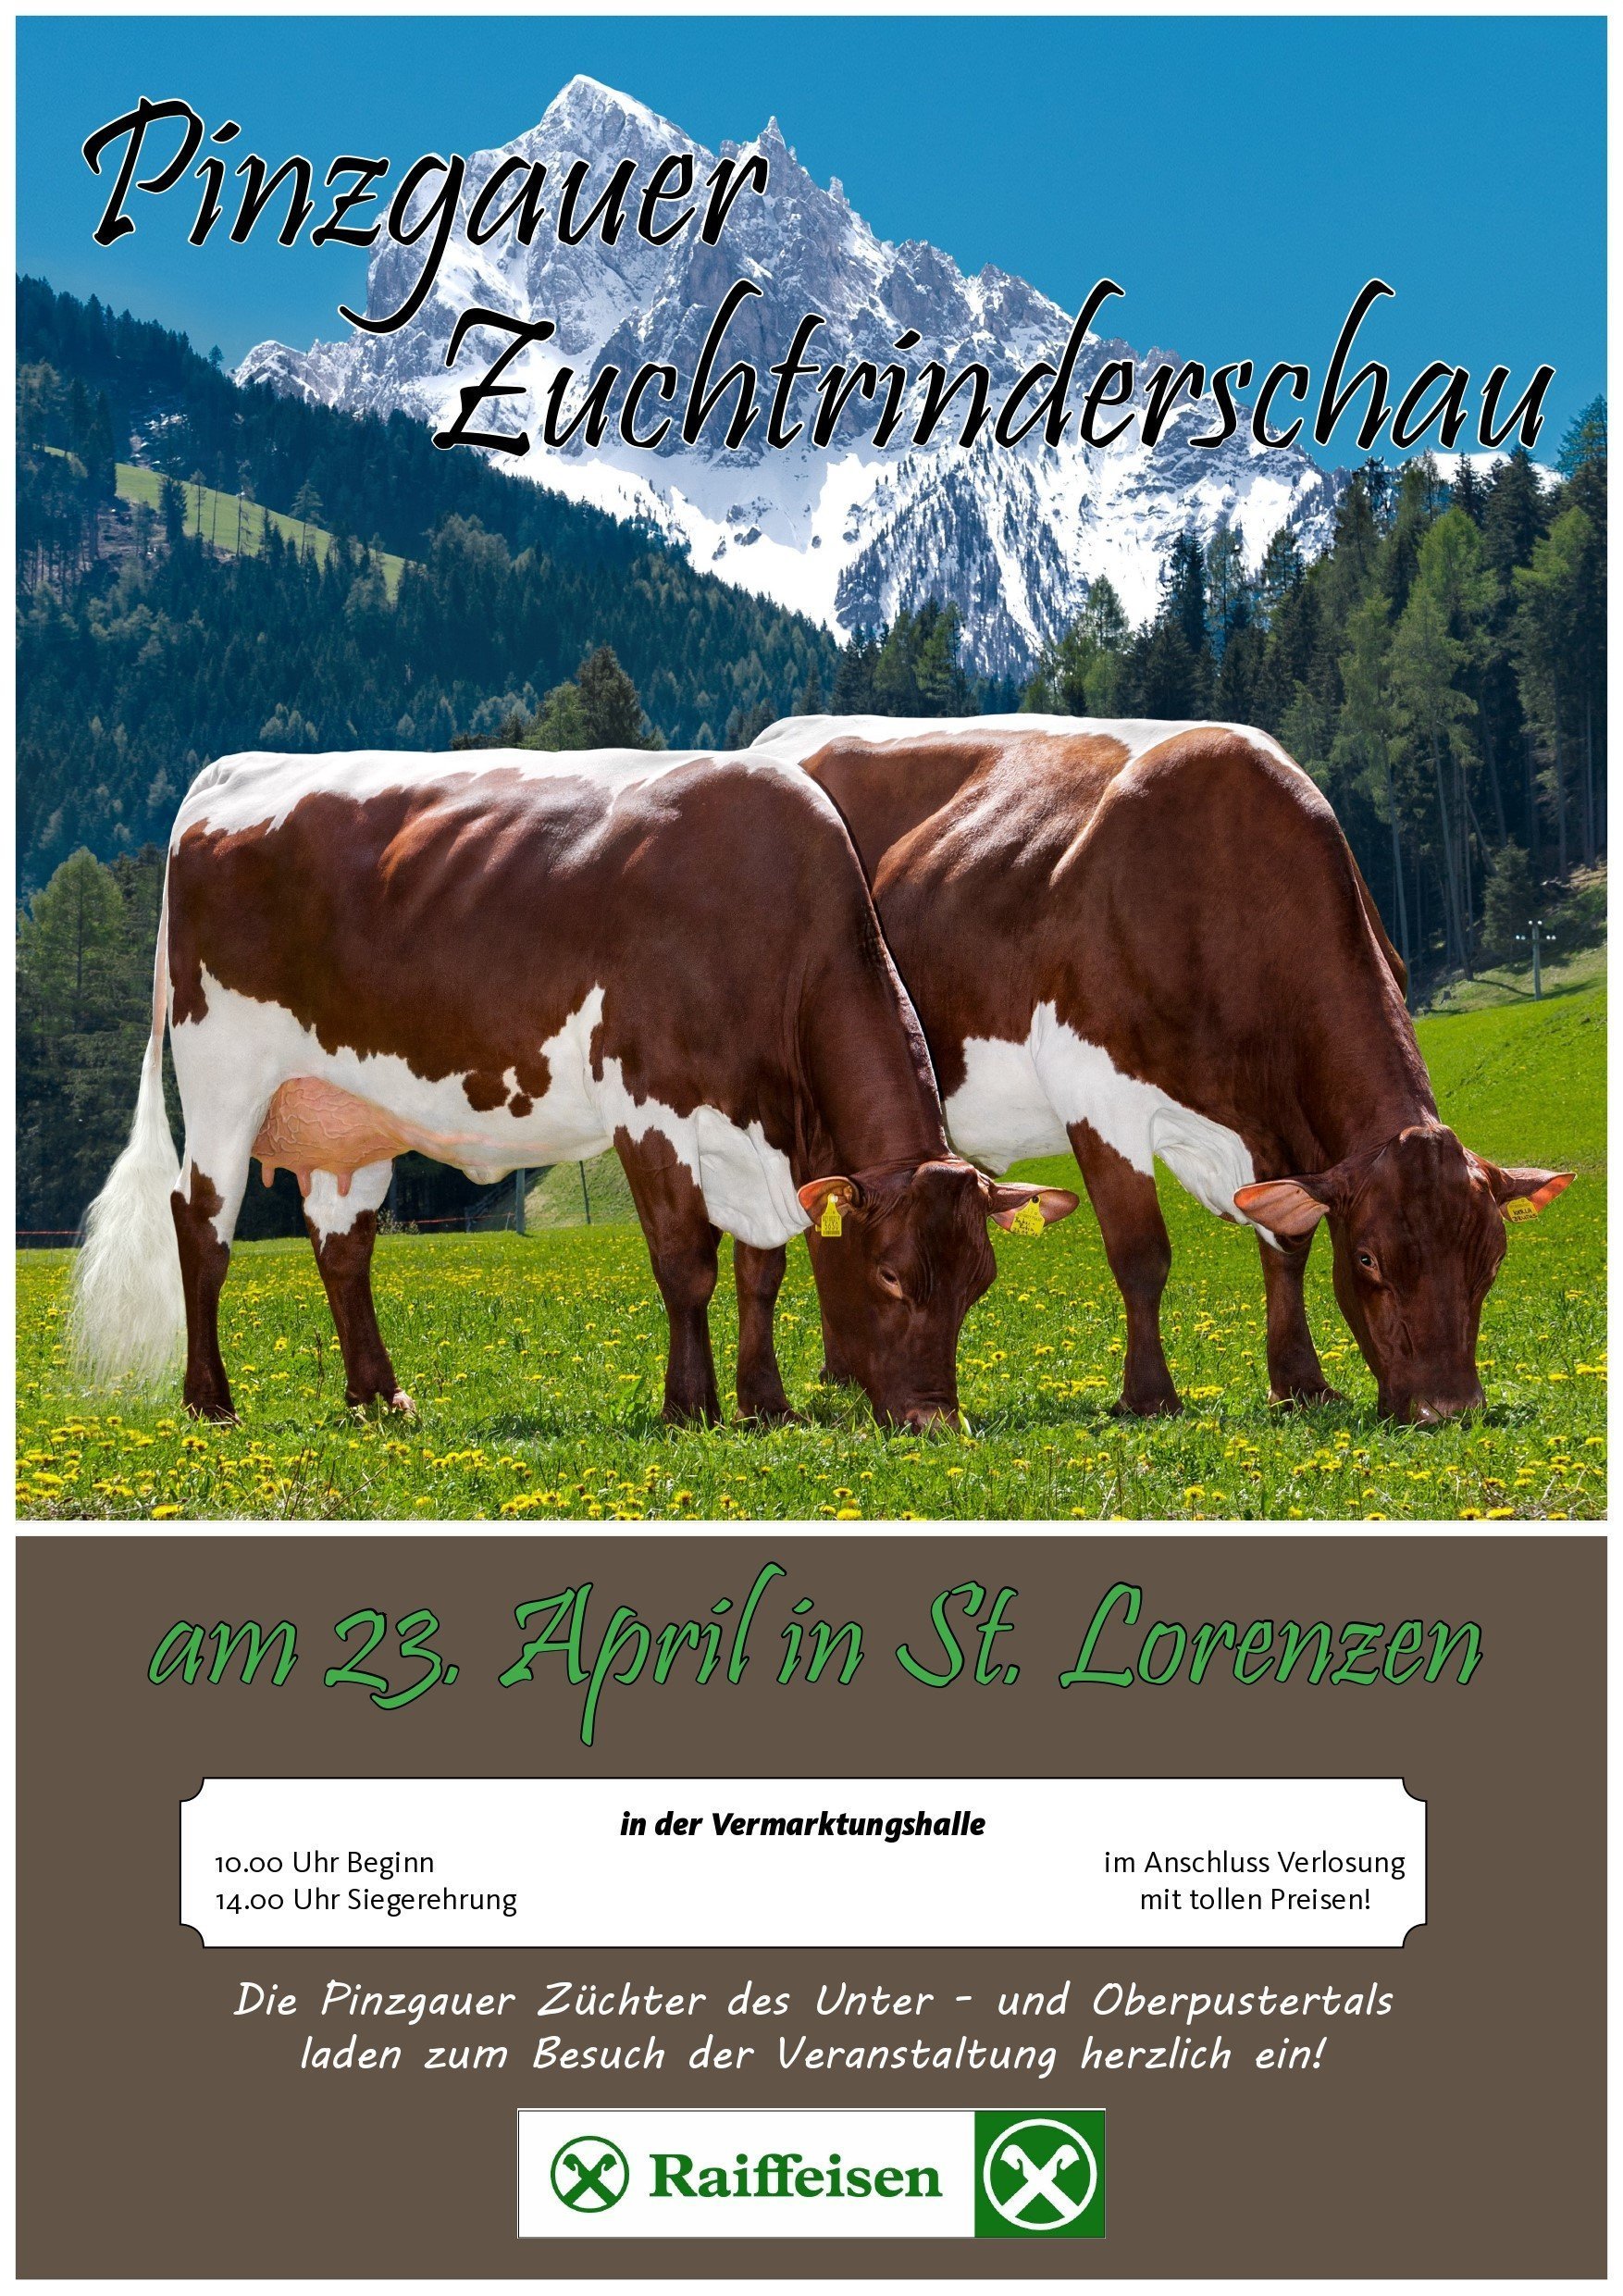 Pinzgauer-Zuchtrinderschau am 23. April 2022